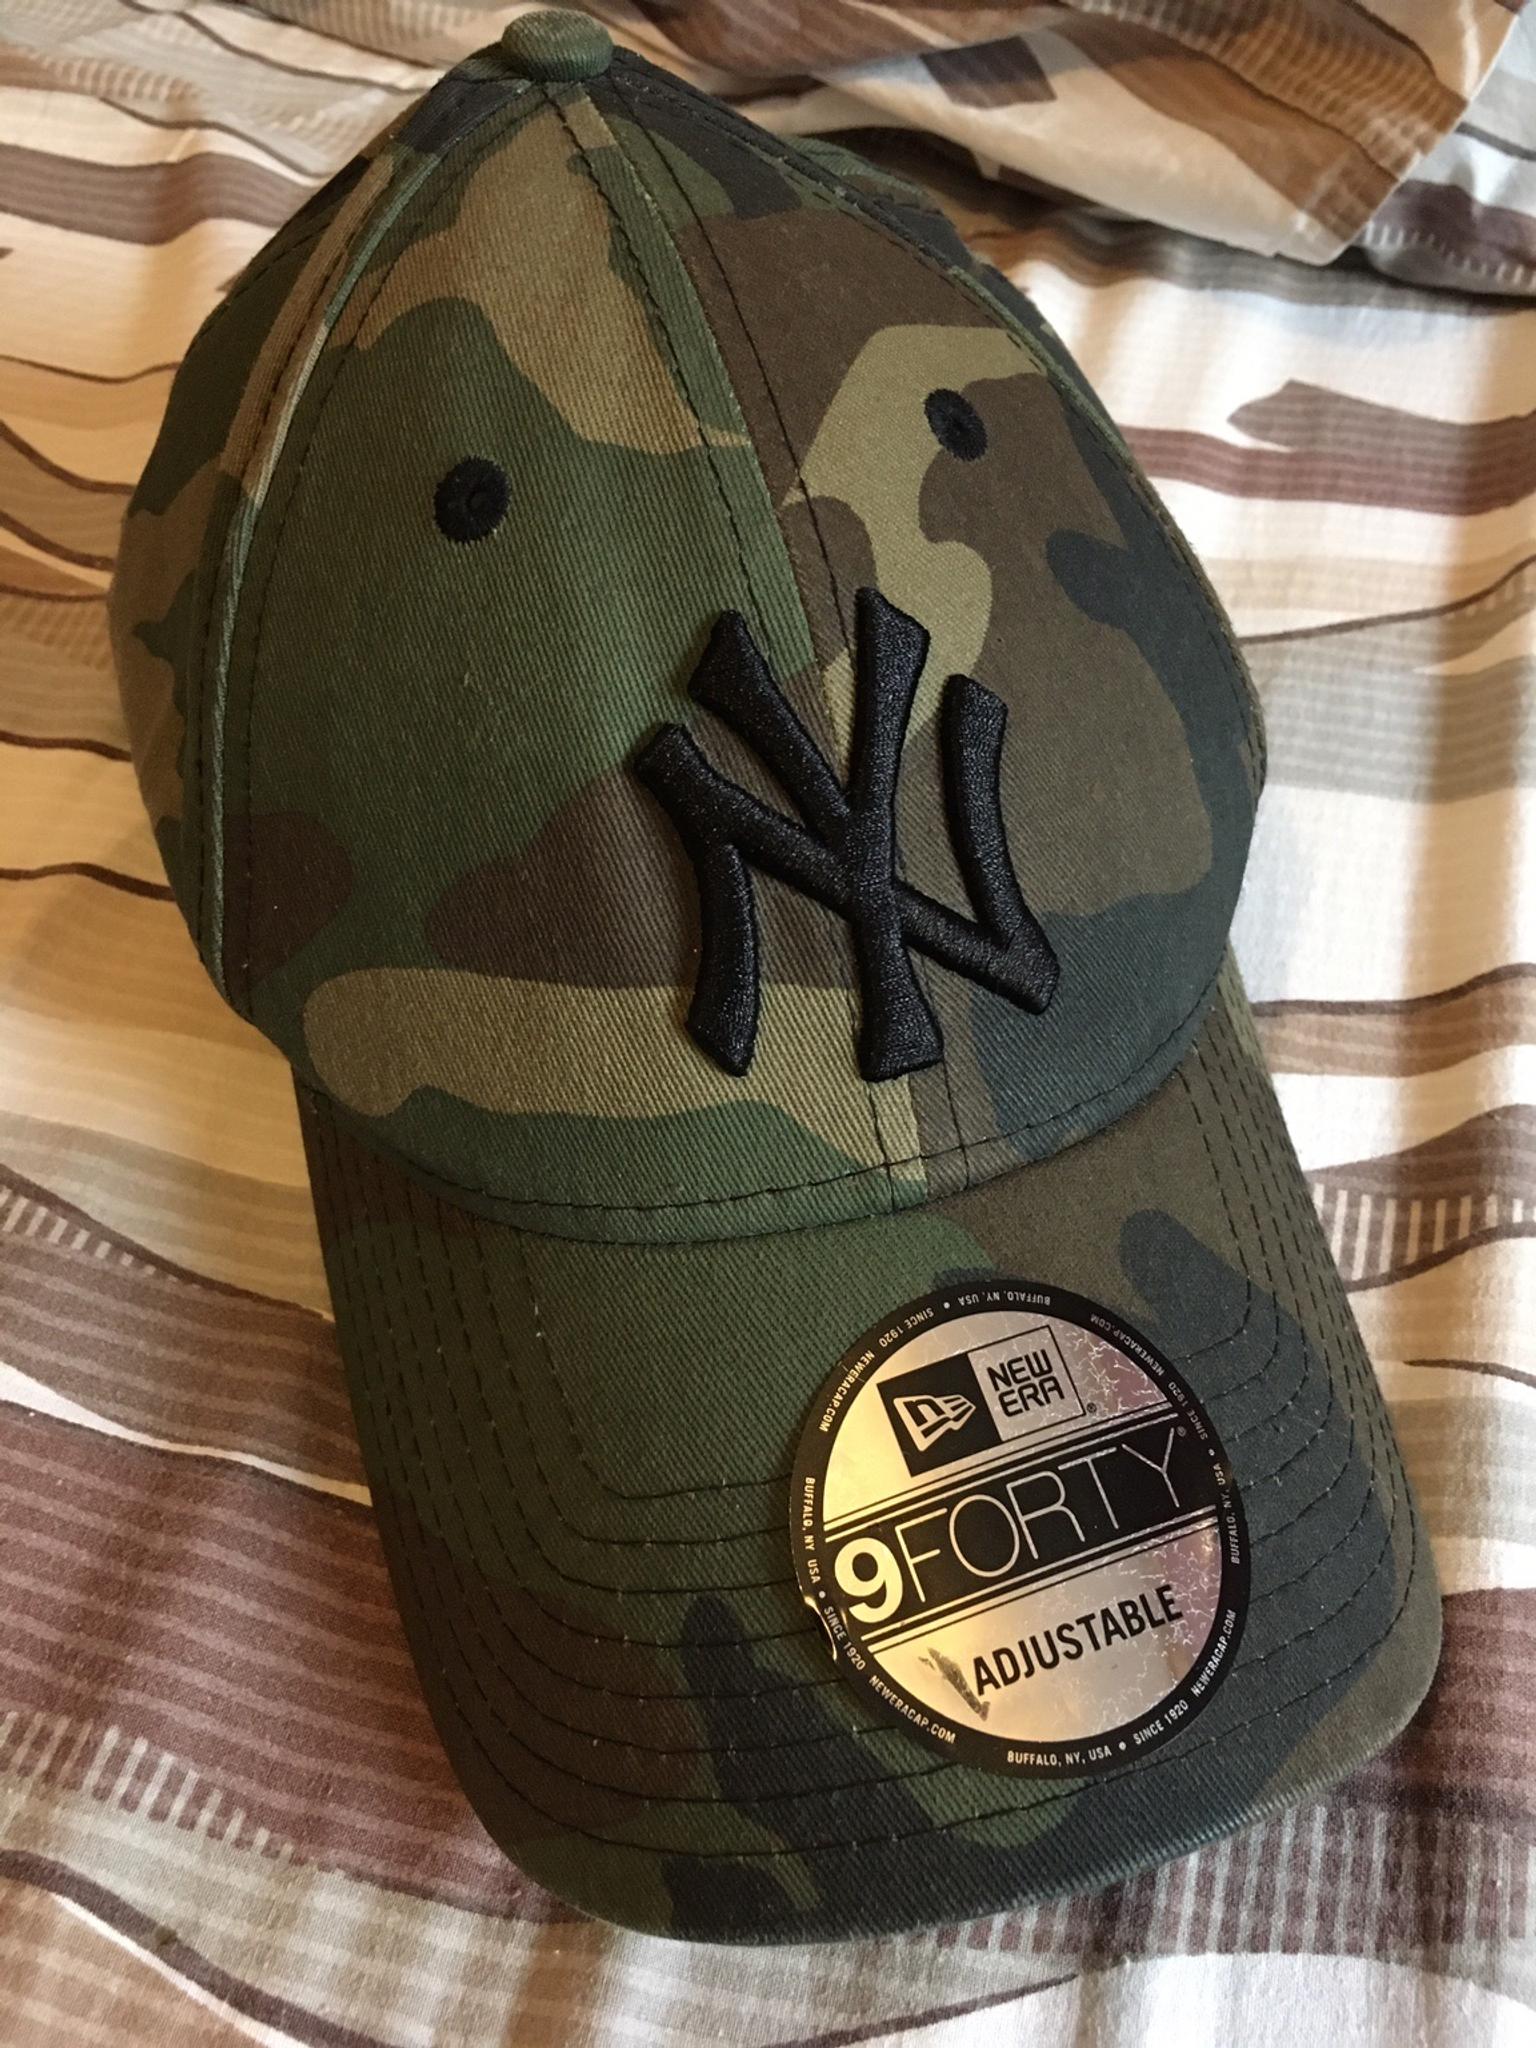 Cappello della New York militare in 20135 Milano for €10.00 for sale |  Shpock